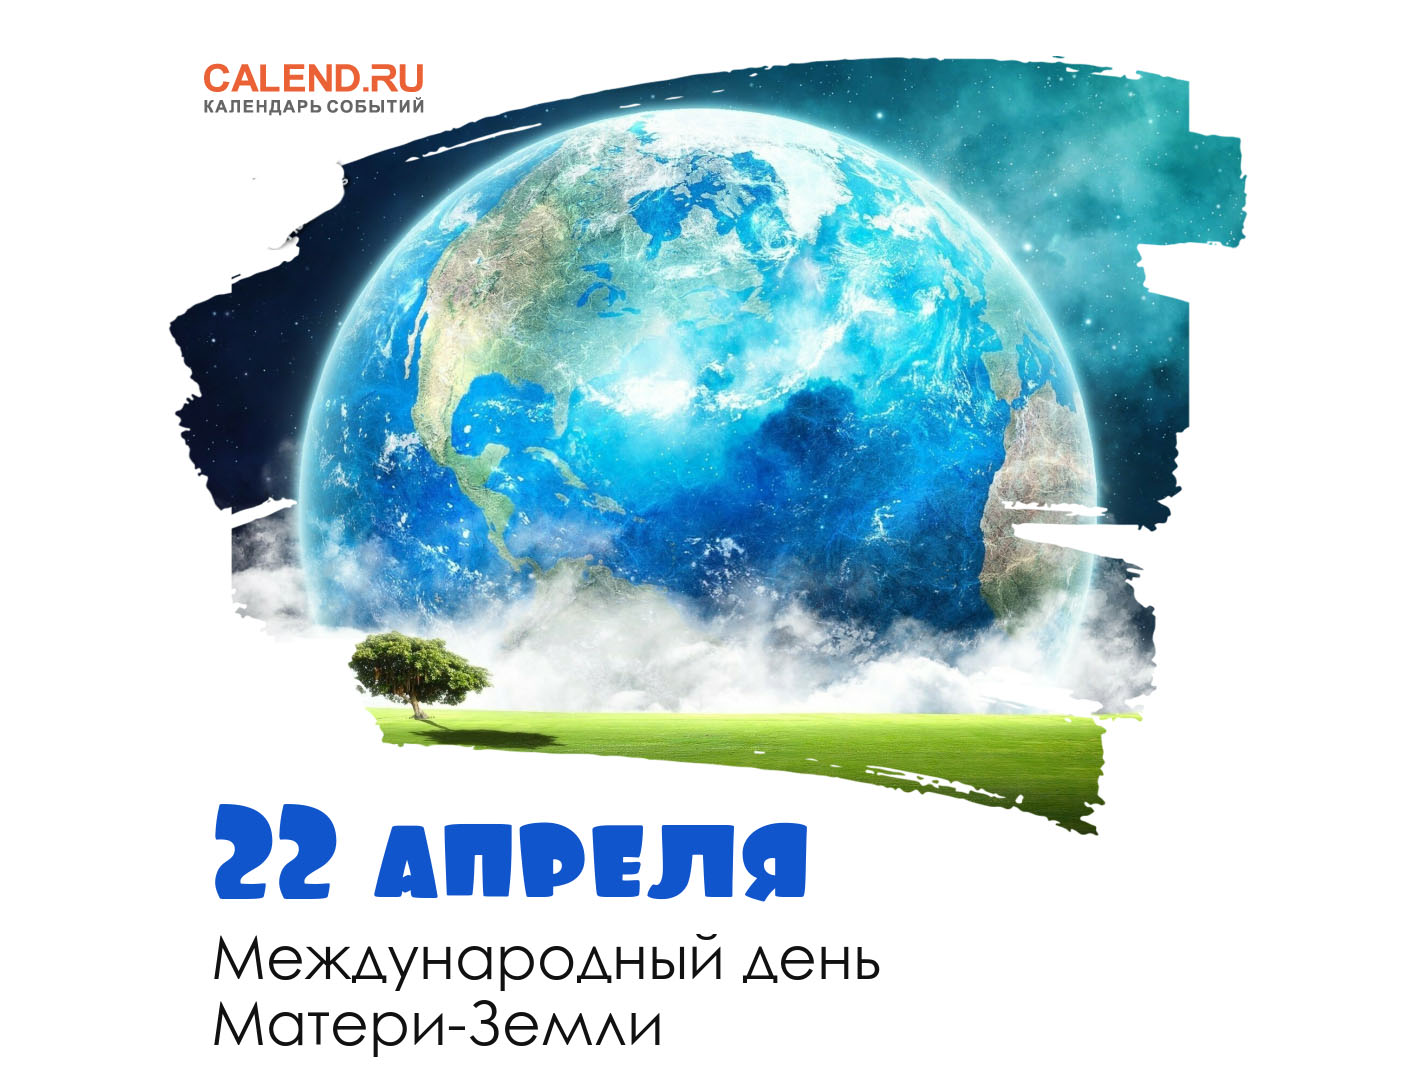 https://www.calend.ru/calendar/wp-content/uploads/22-aprelya-1.jpg